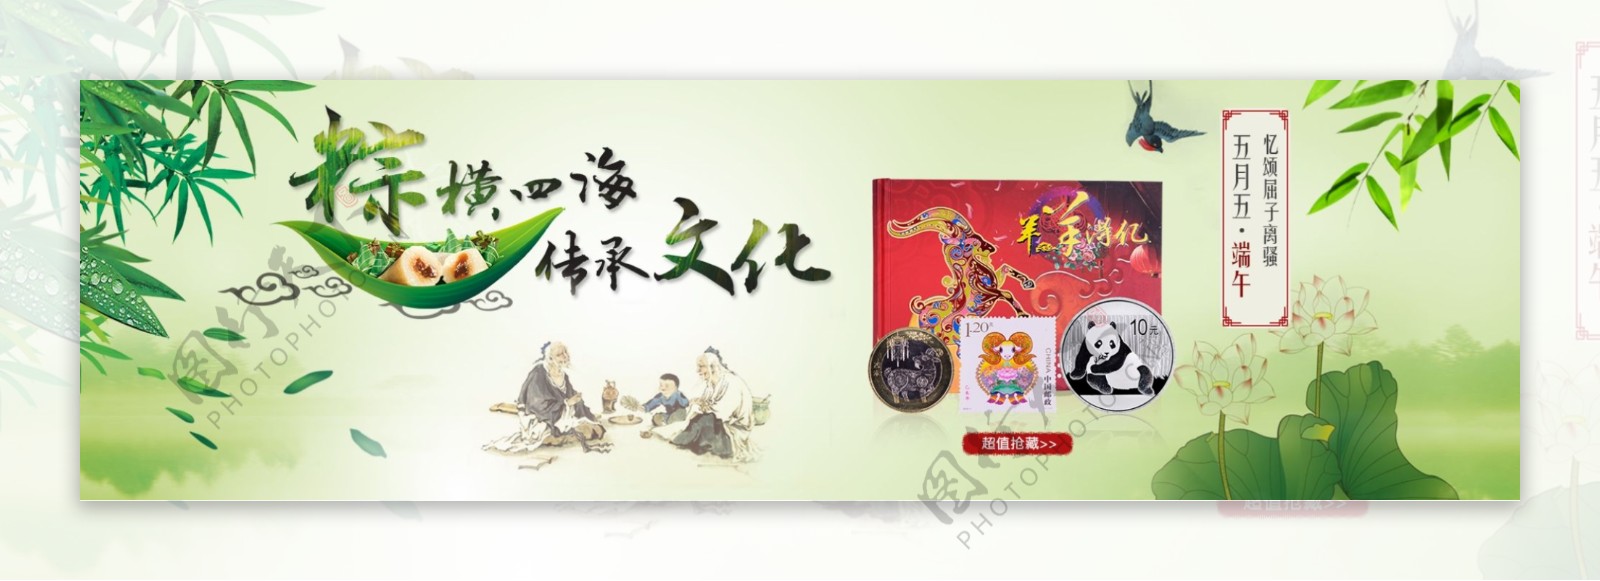 淘宝天猫中国风夏季端午节绿色背景首屏海报